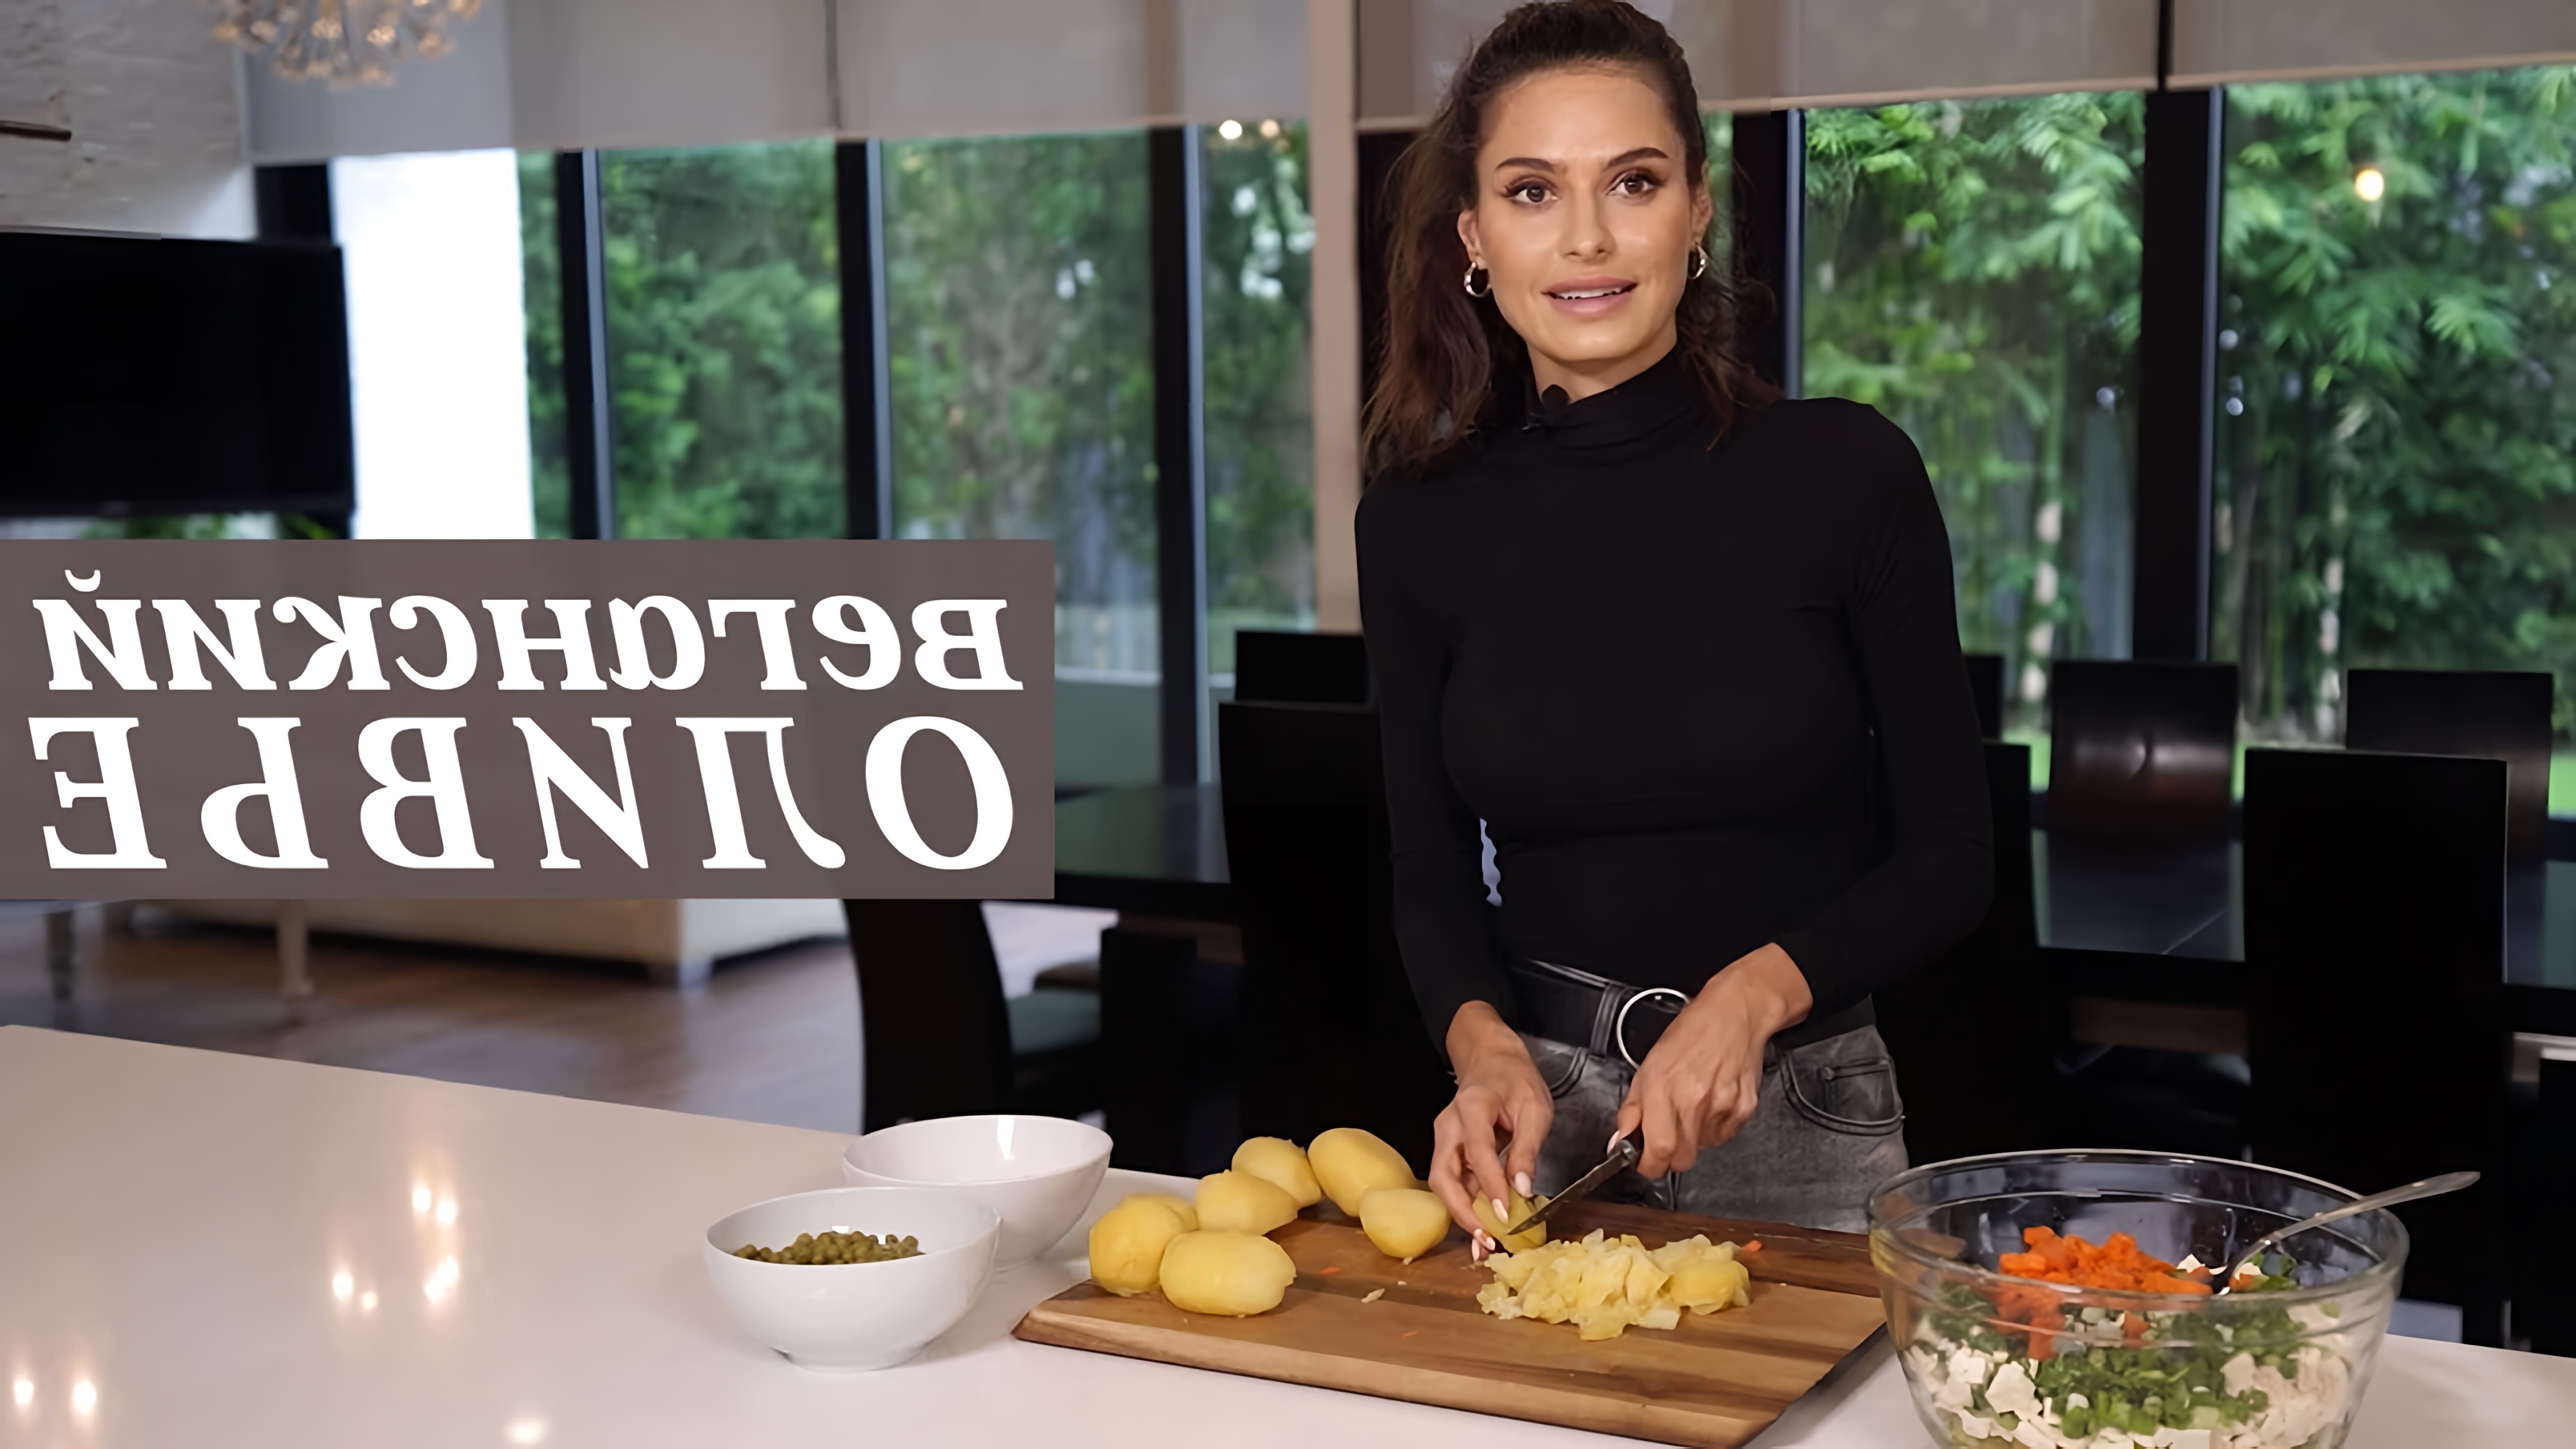 В этом видео Алина Федорова делится своим рецептом веганского оливье, который является менее калорийным и более полезным для здоровья